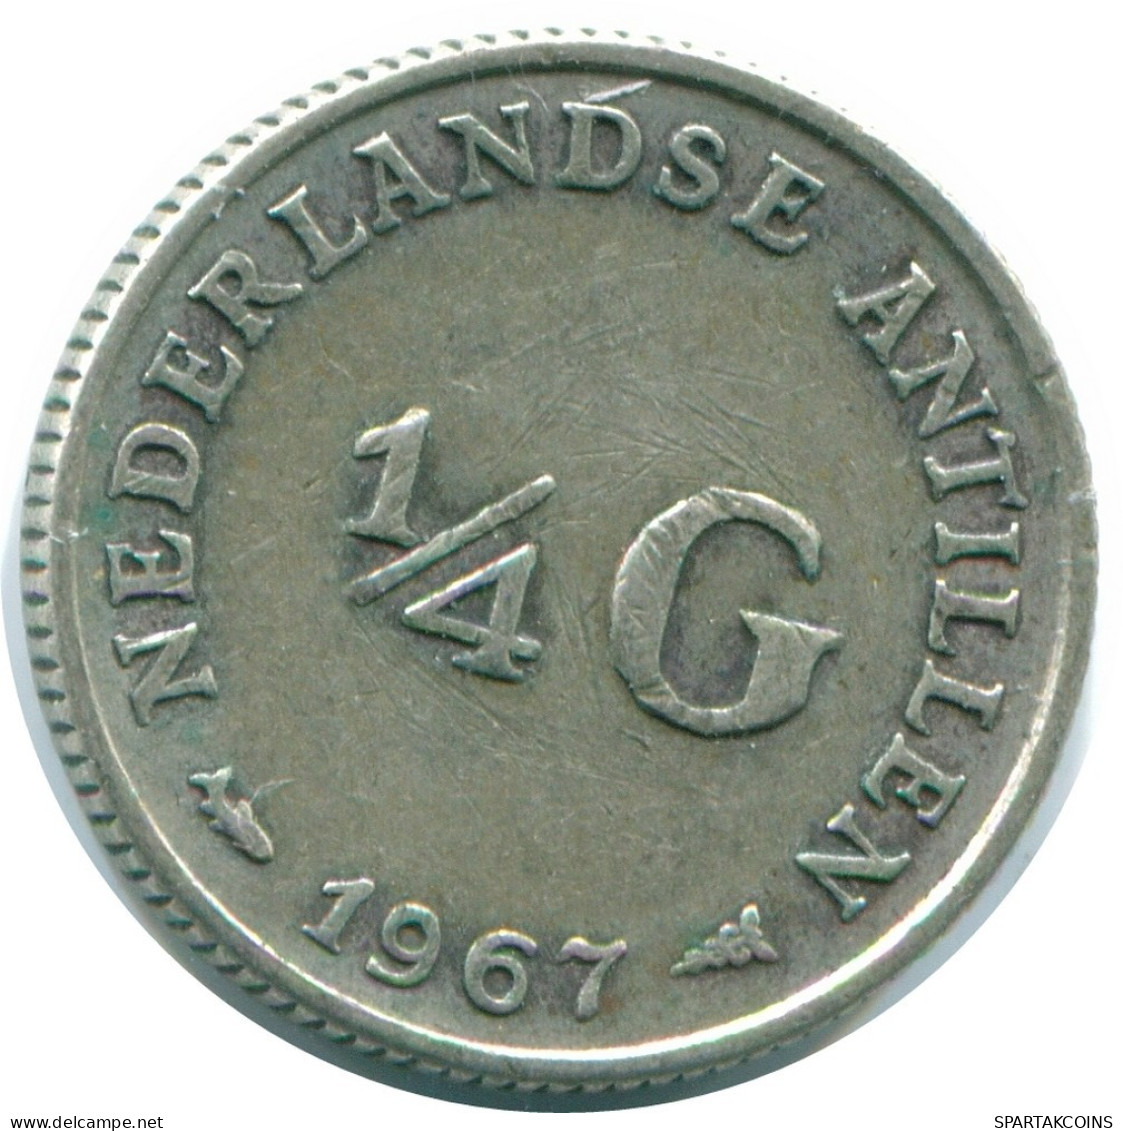 1/4 GULDEN 1967 NIEDERLÄNDISCHE ANTILLEN SILBER Koloniale Münze #NL11582.4.D.A - Antilles Néerlandaises